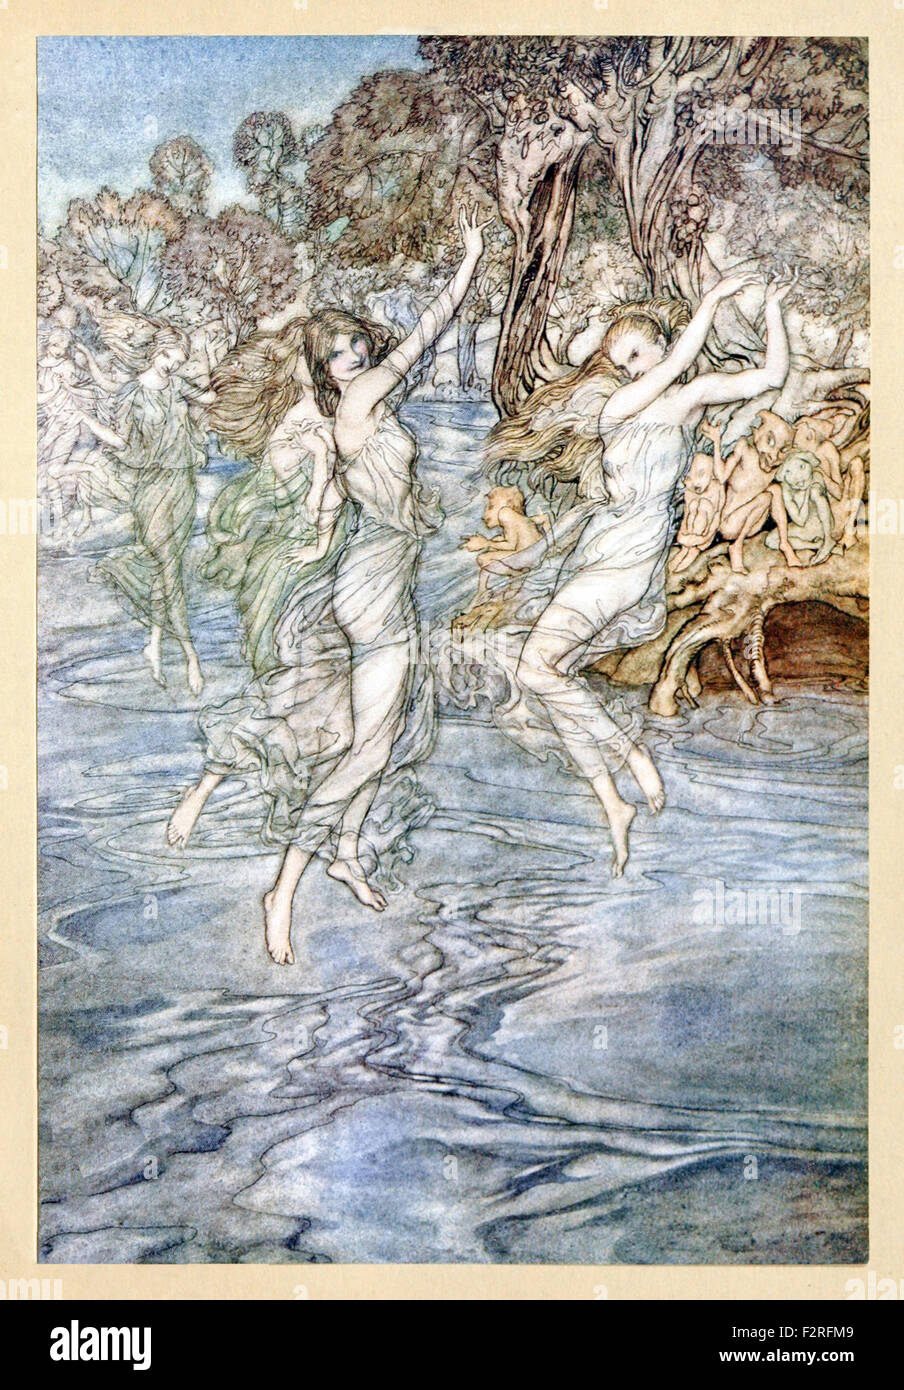 "Von den Nymphen, dass nächtlichen Tanz auf deine Streams mit schlauen Blick" von "Comus" von John Milton, Illustration von Arthur Rackham (1867-1939). Siehe Beschreibung für mehr Informationen. Stockfoto